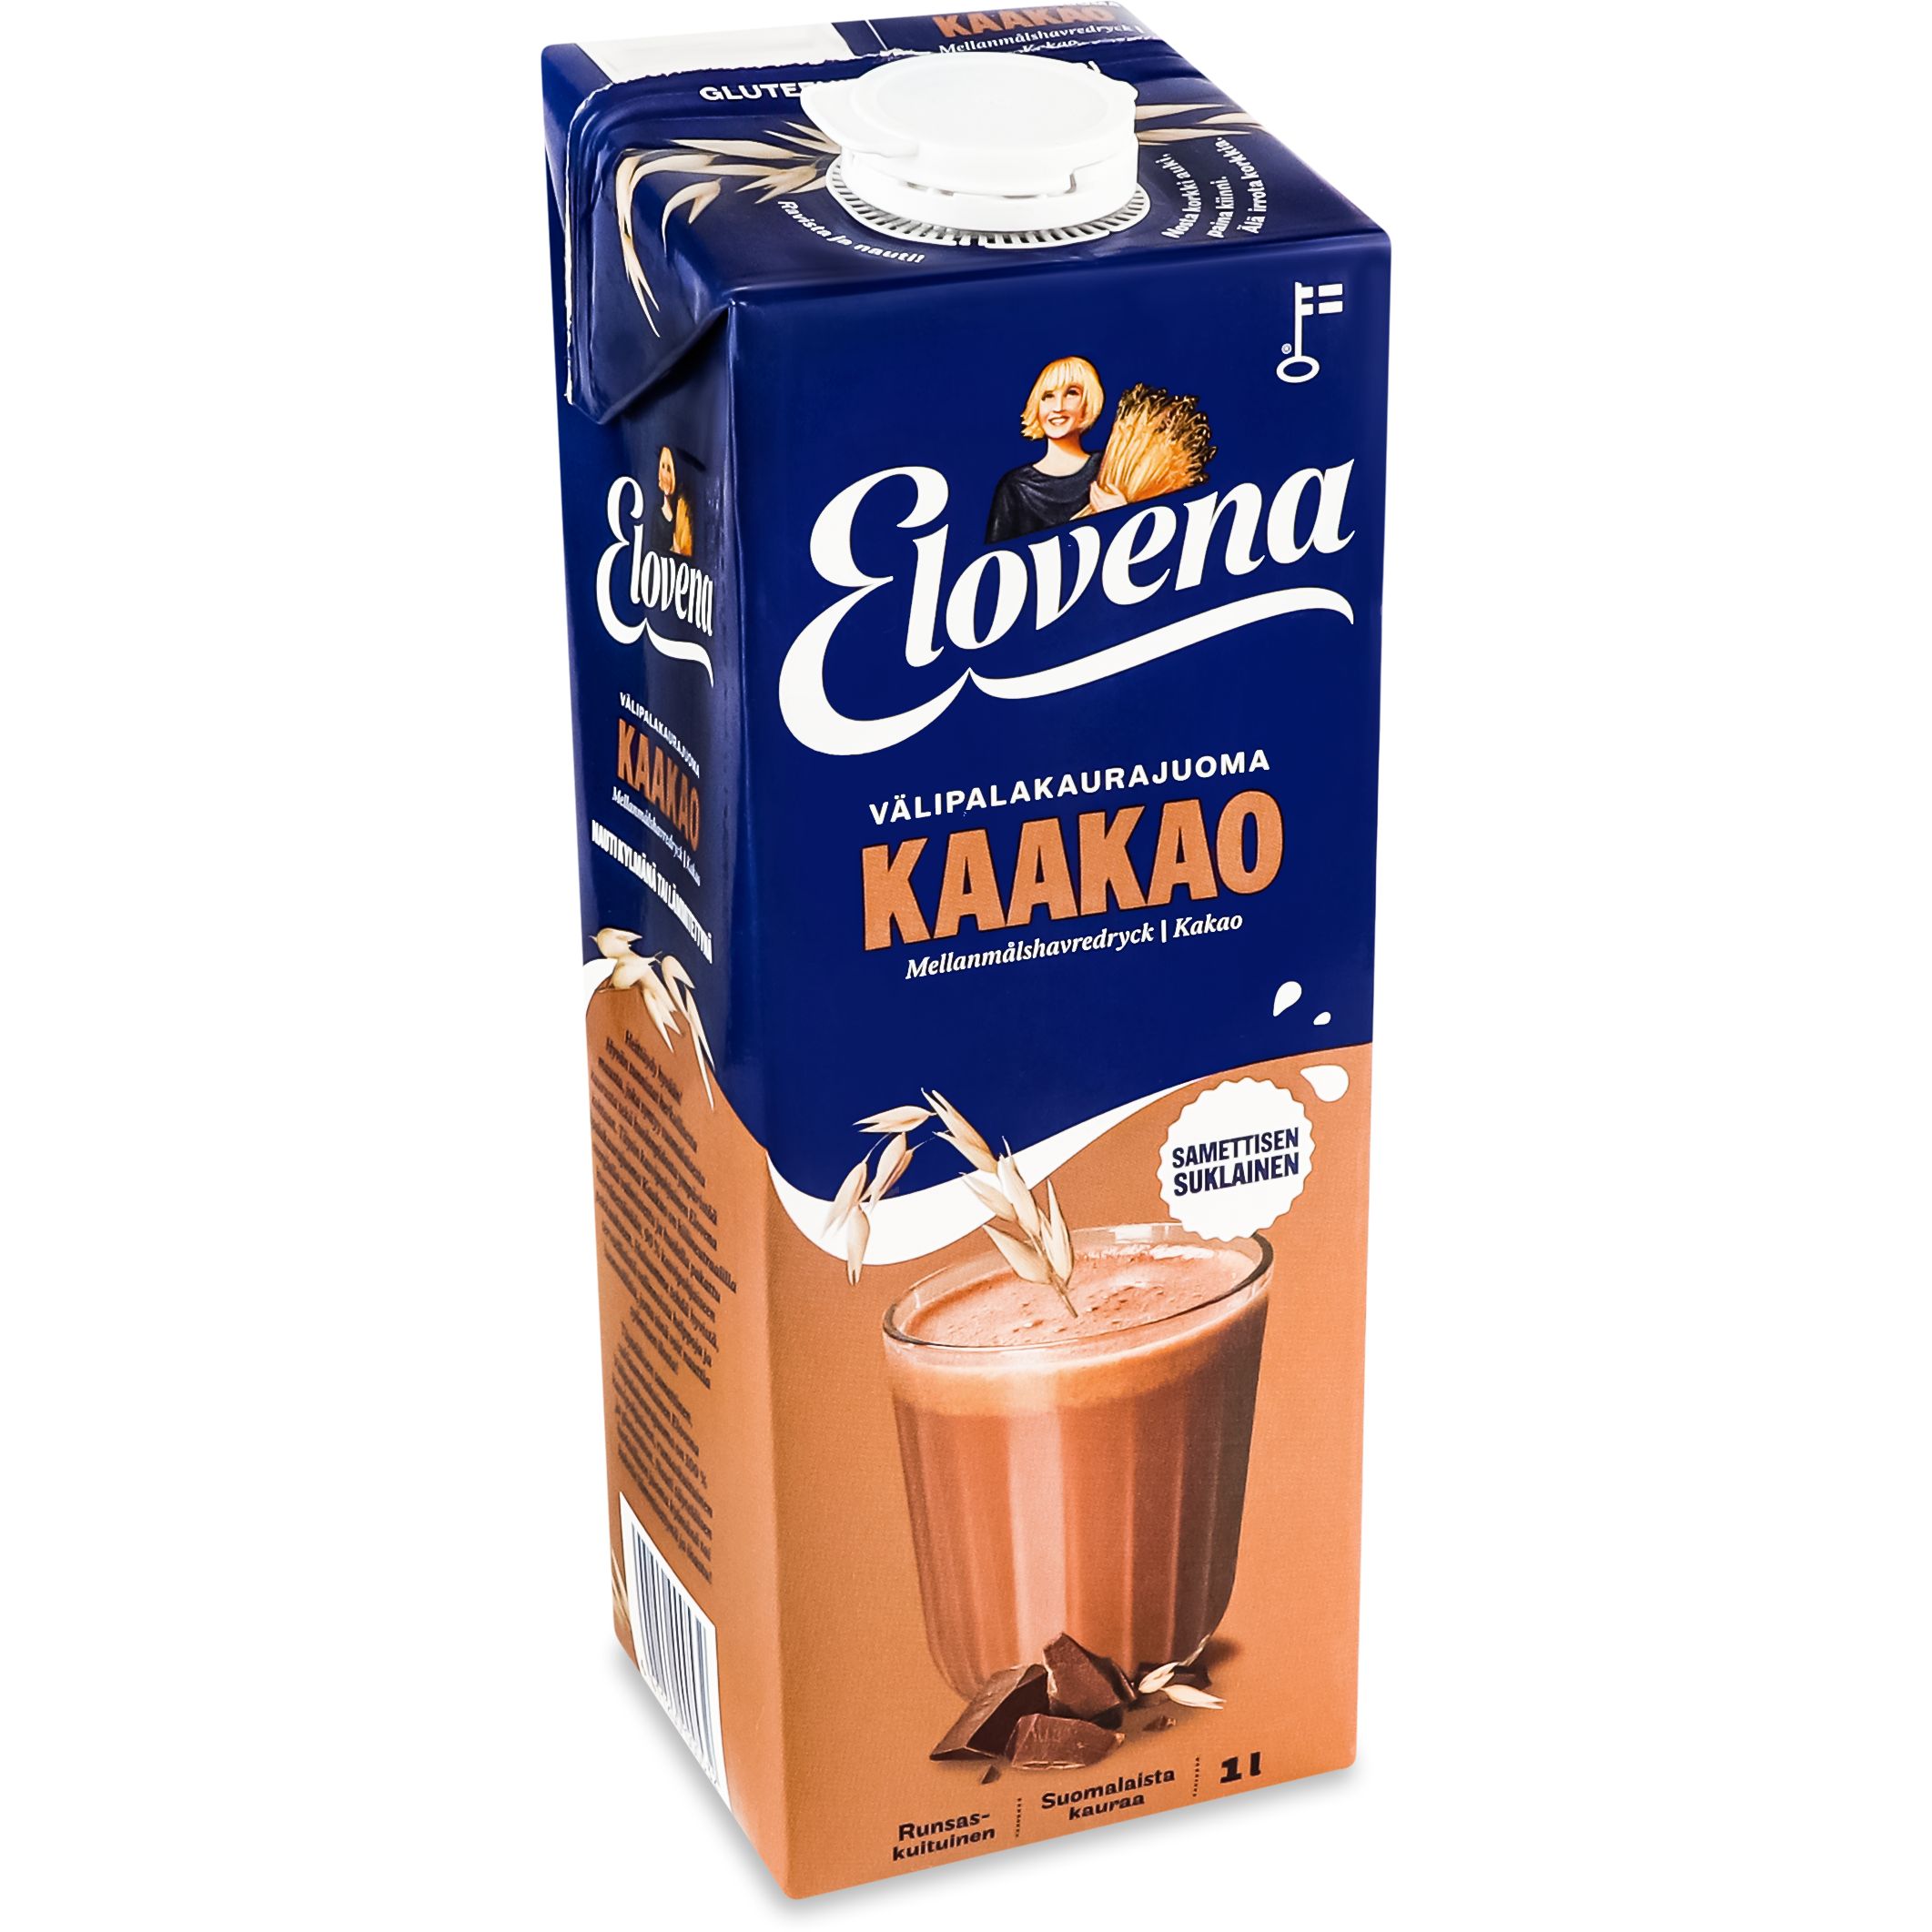 Овсяный напиток Elovena Kaakao с шоколадом 1л - фото 2